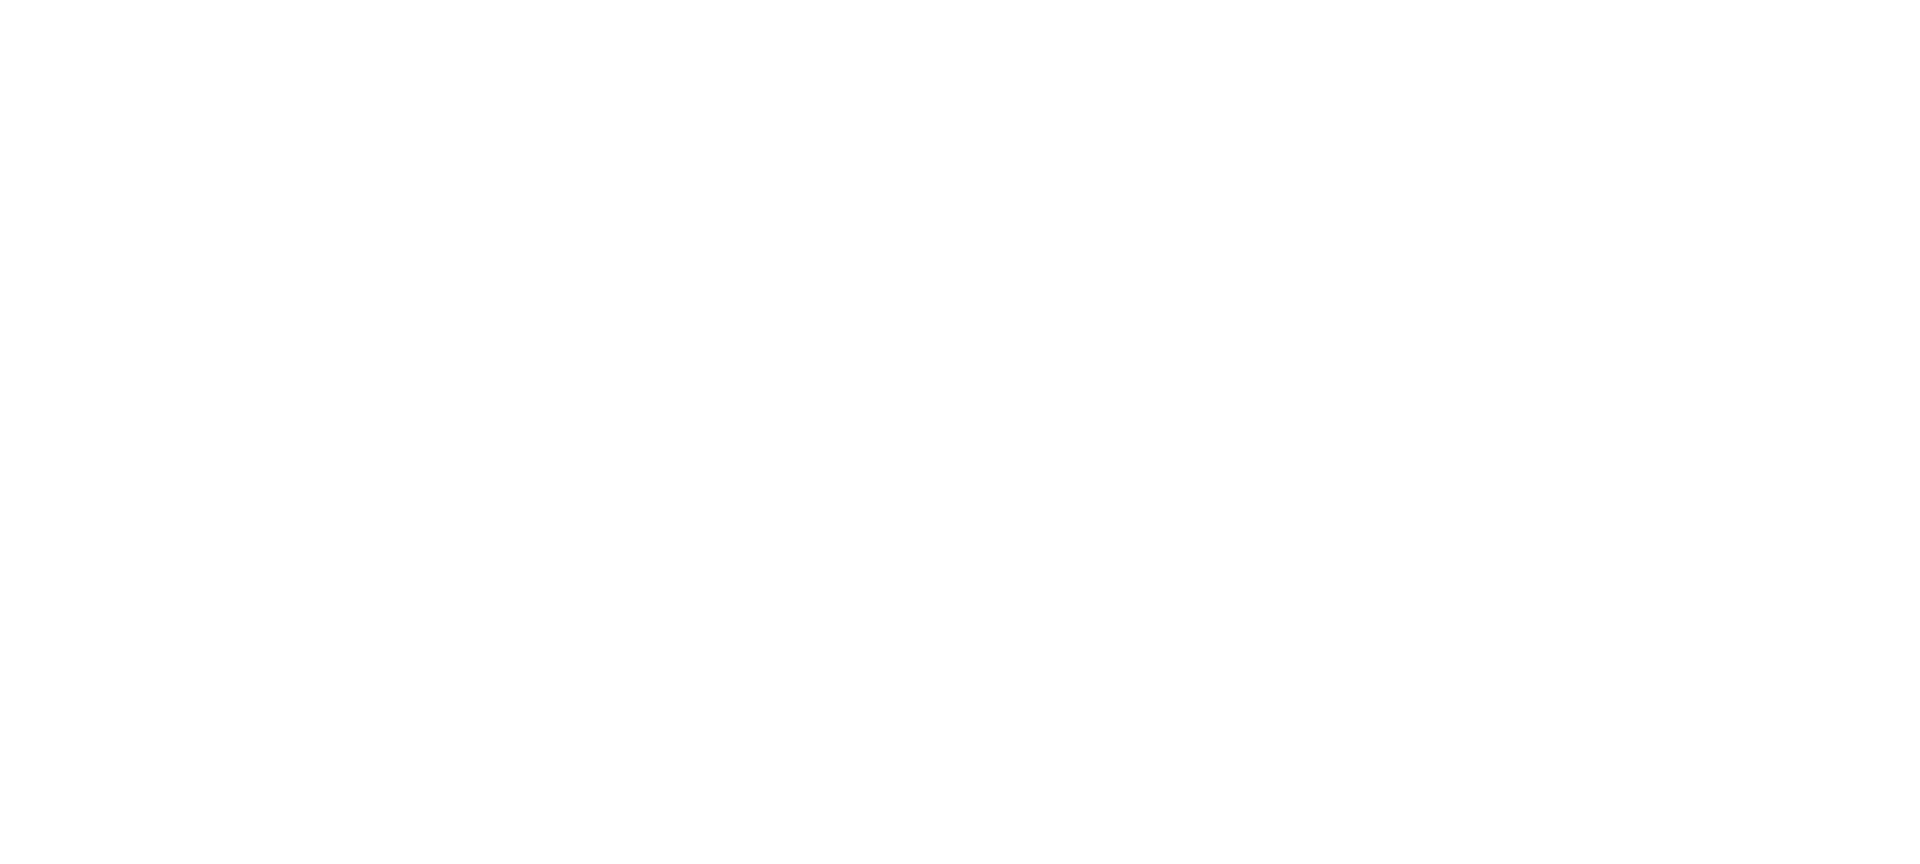 C-Span Resources logo